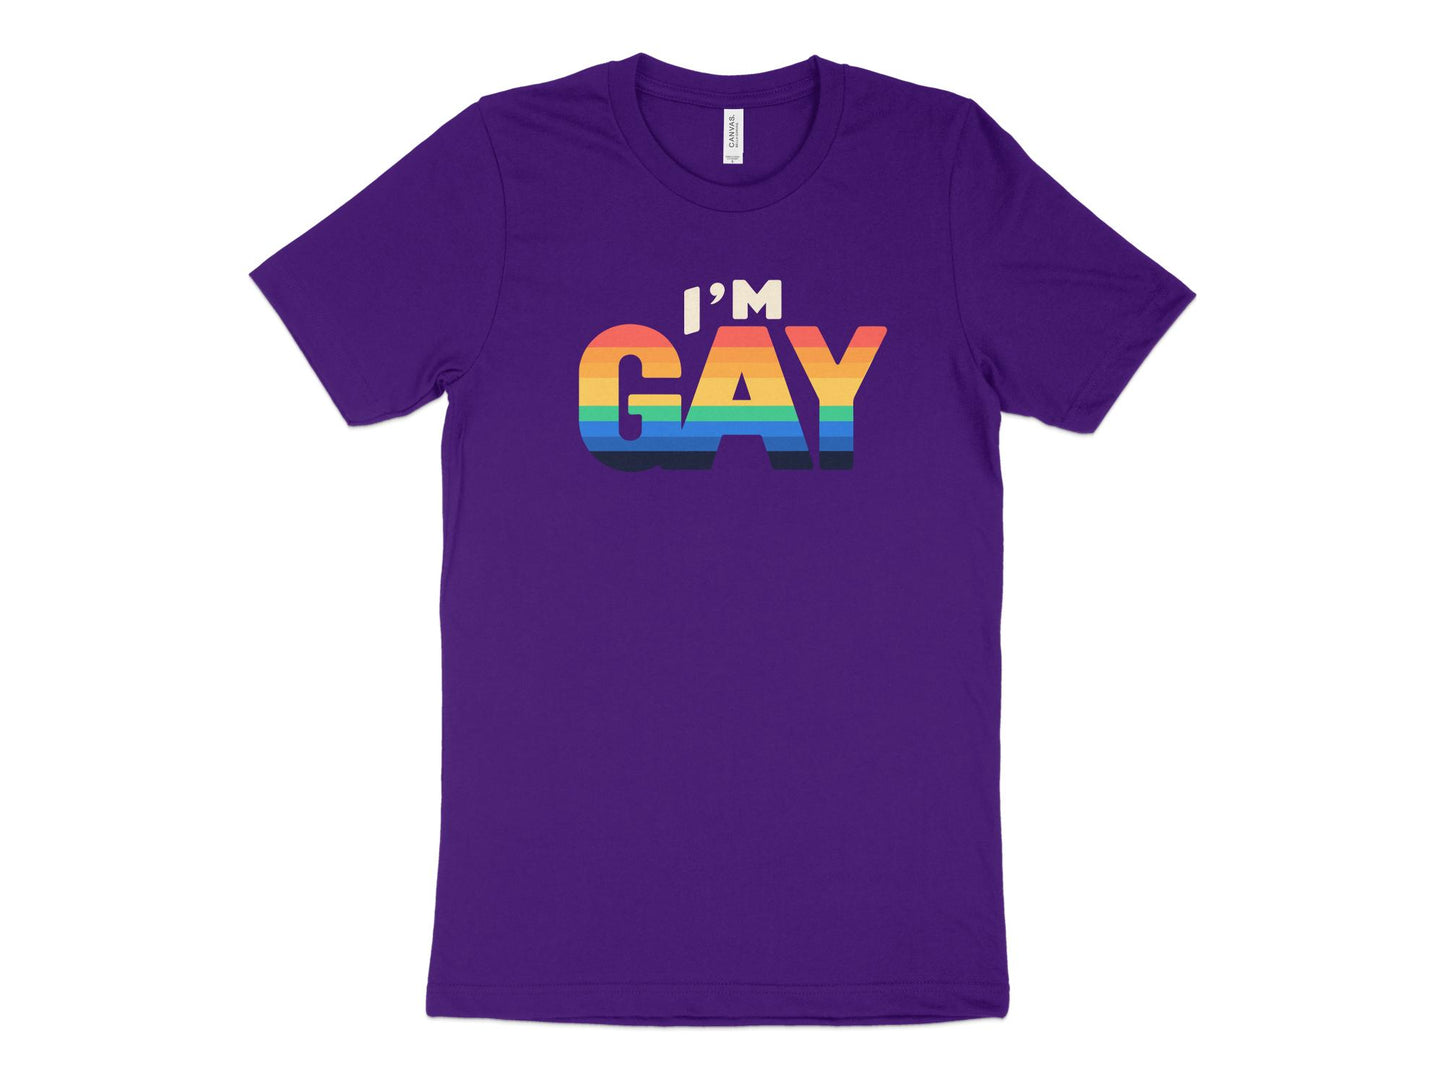 I'm Gay Shirt, purple